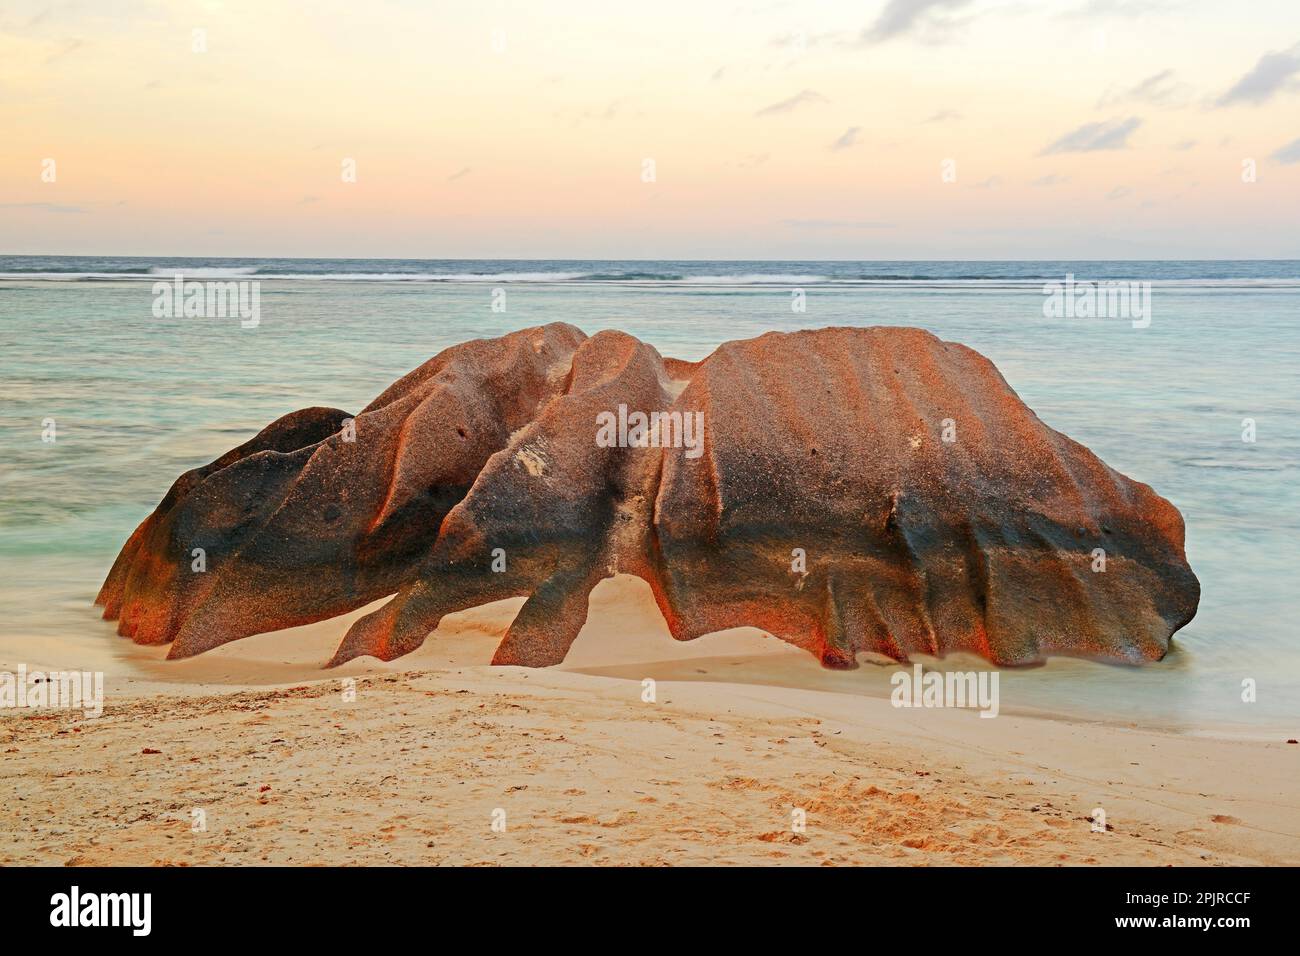 Plage et rochers de granit à la plage de rêve Source d'argent, l'île de la Digue, Seychelles Banque D'Images